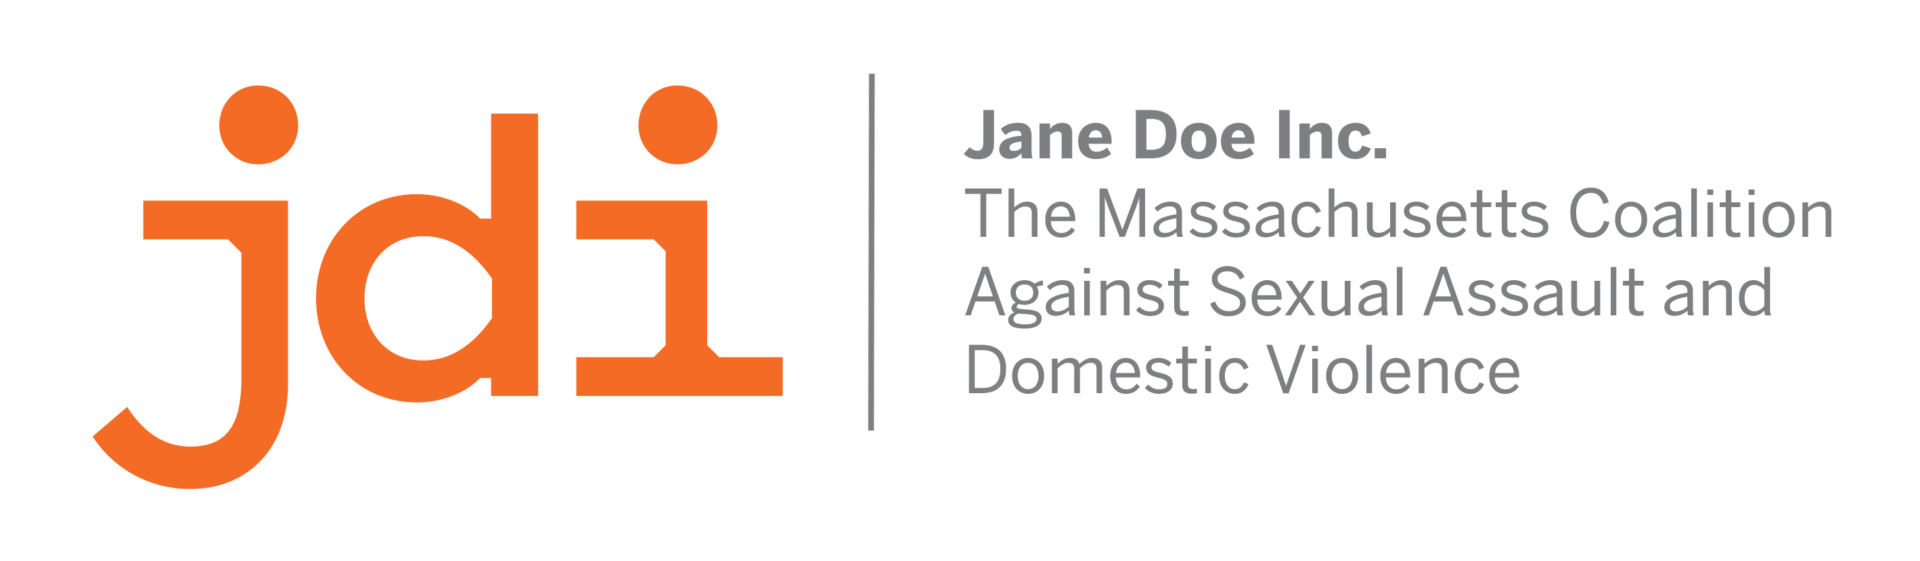 Jane Doe Inc. 